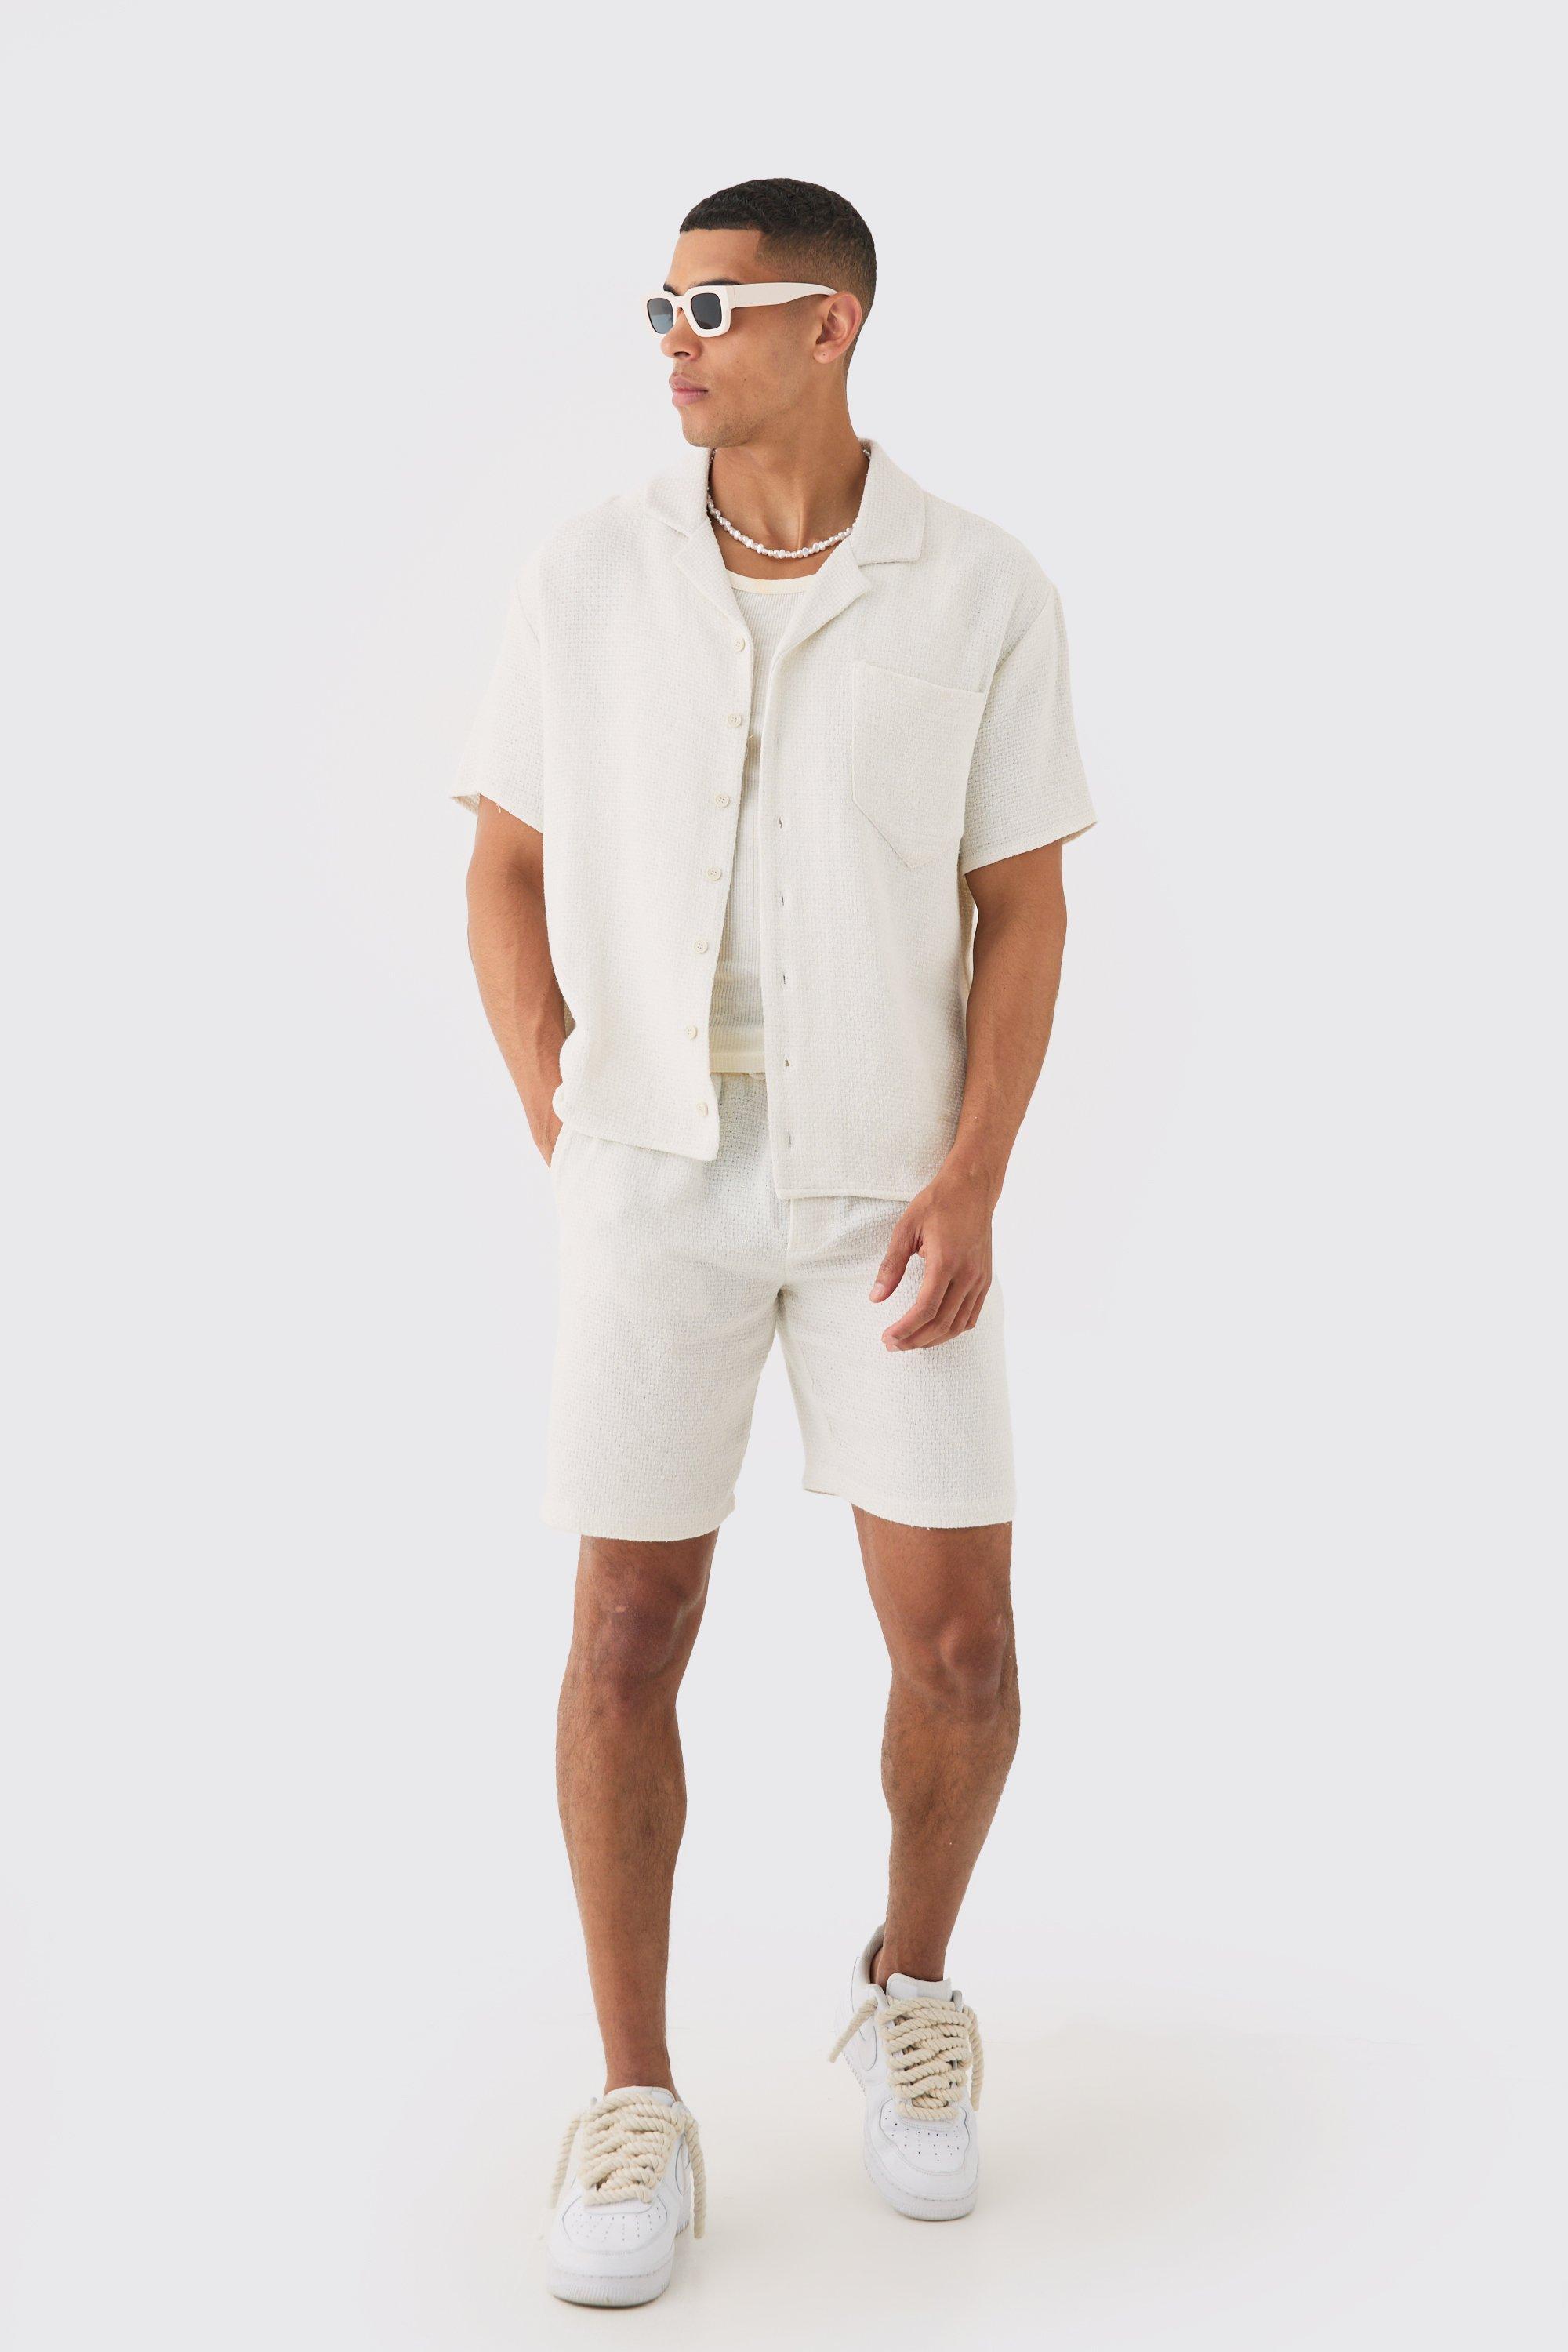 Image of Oversized Short Sleeve Open Weave Shirt & Short Set, Cream